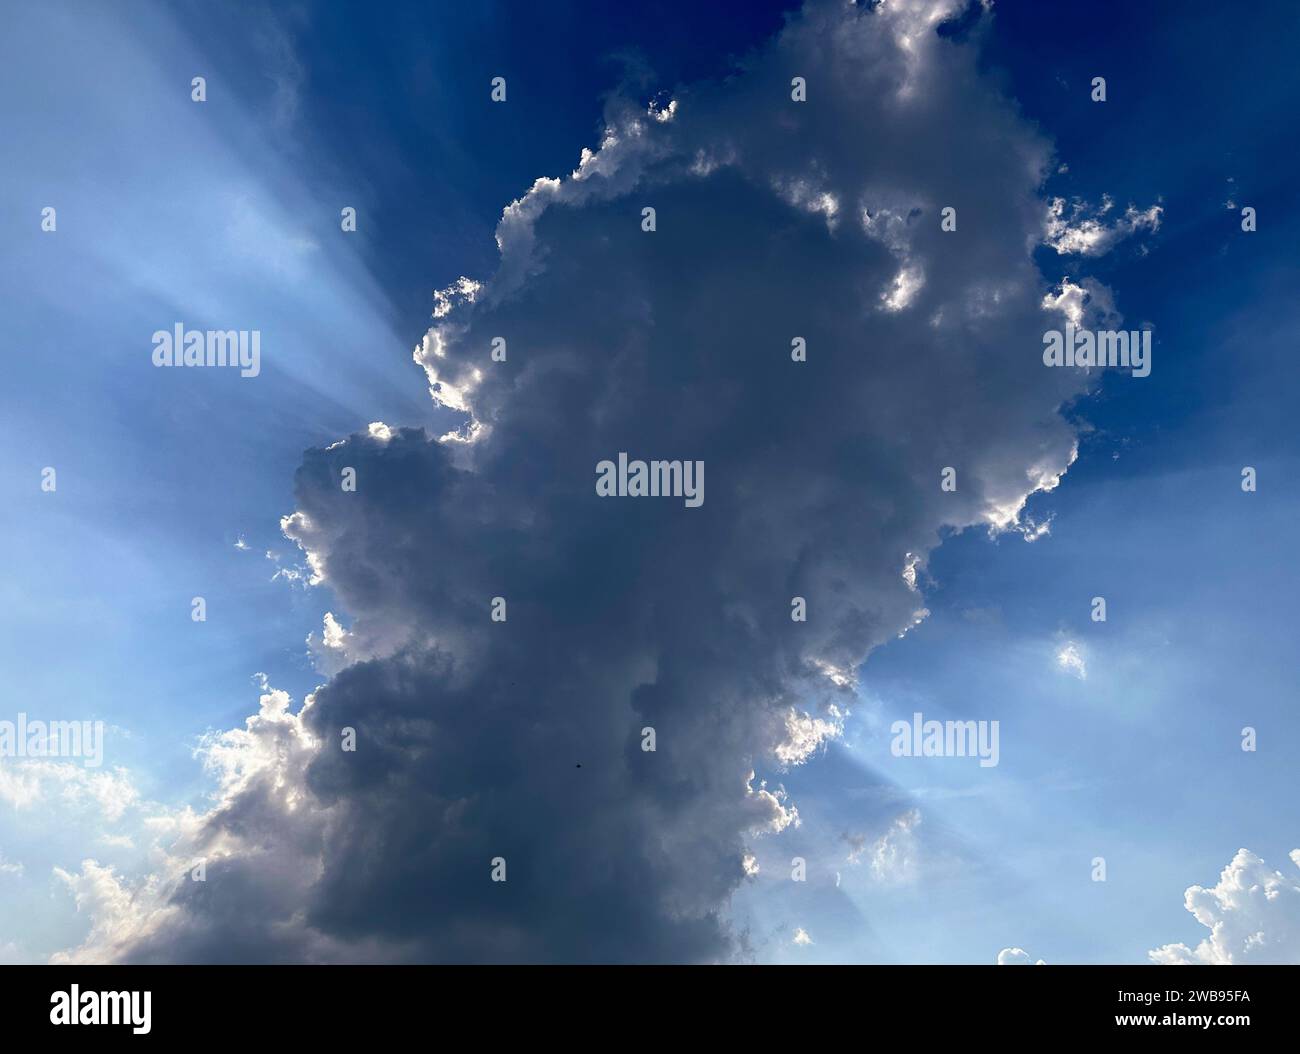 Une personne se tient au sommet d'un nuage blanc moelleux dans un ciel bleu clair, profitant de la vue à couper le souffle Banque D'Images